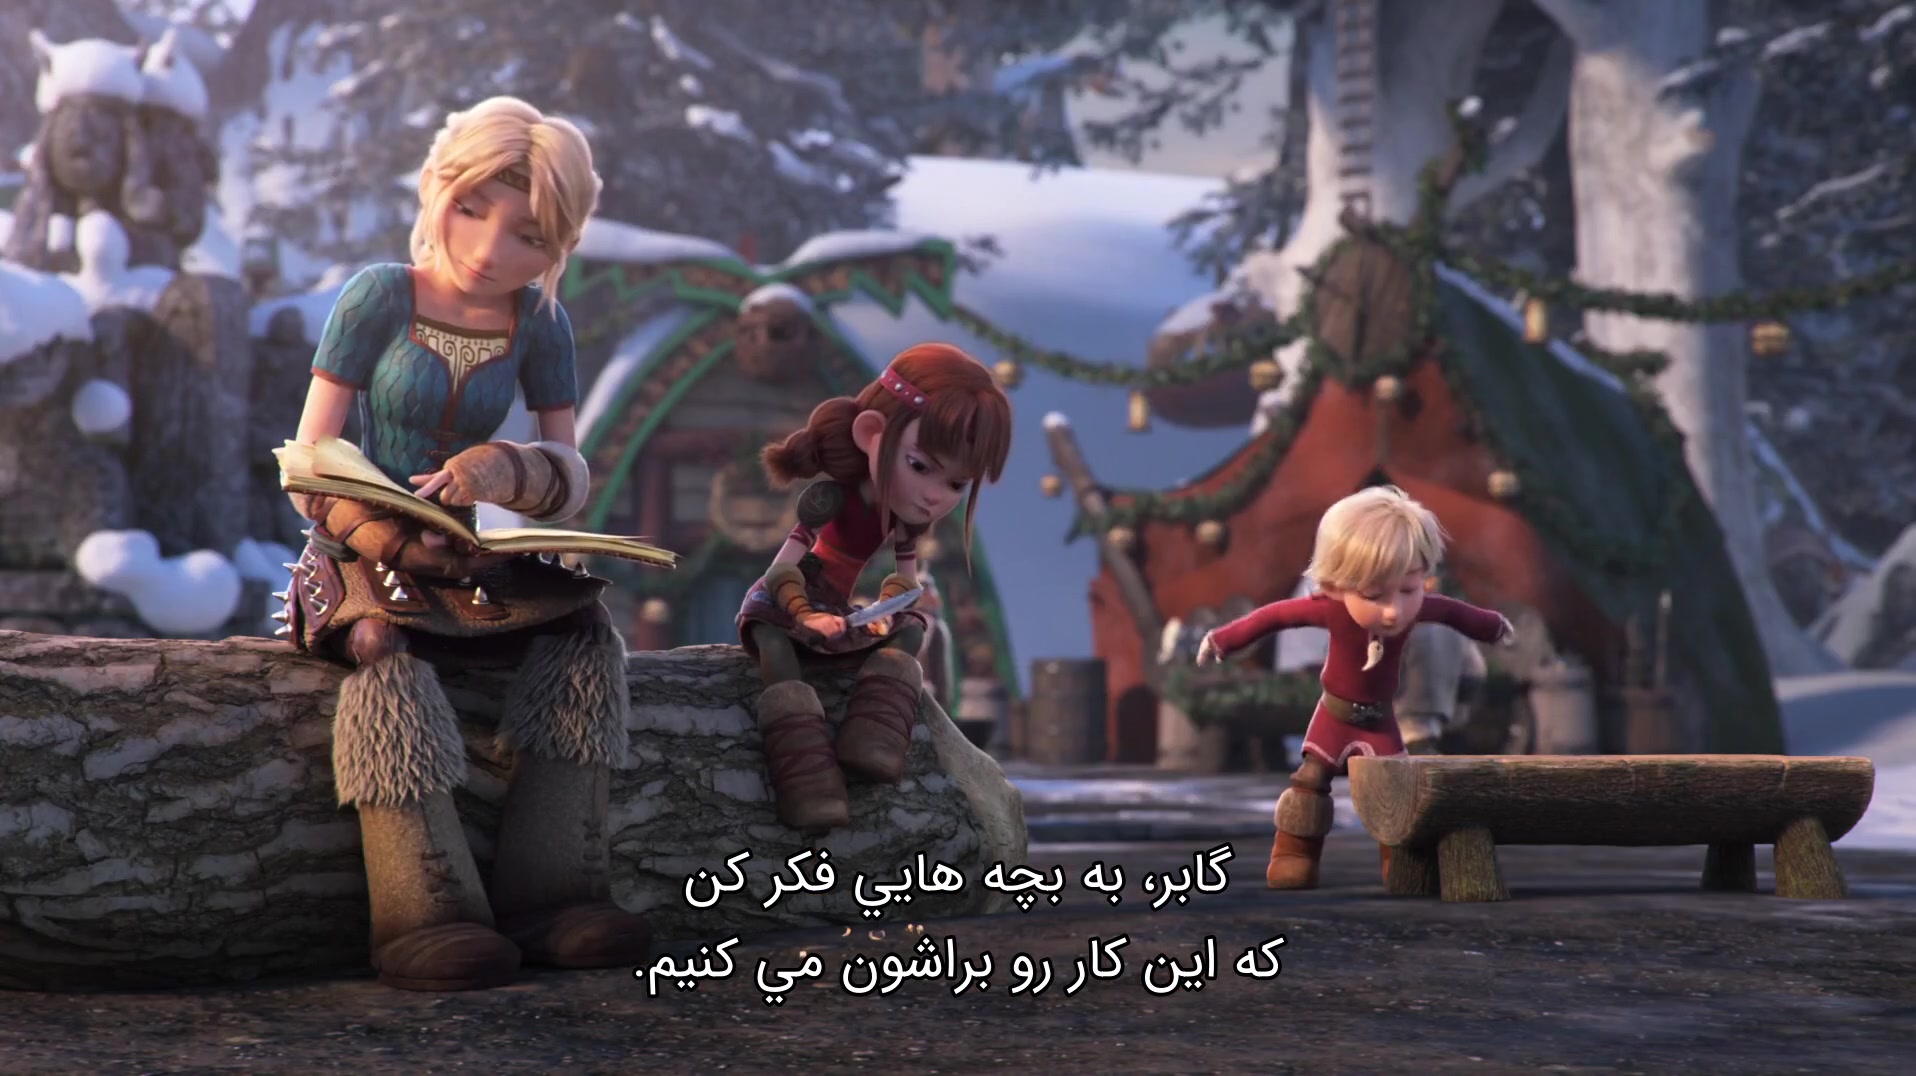 انیمیشن مربی اژدها 4 بازگشت به خانه با زیرنویس فارسی و کیفیت بالا | How to Train Your Dragon Homecoming 2019